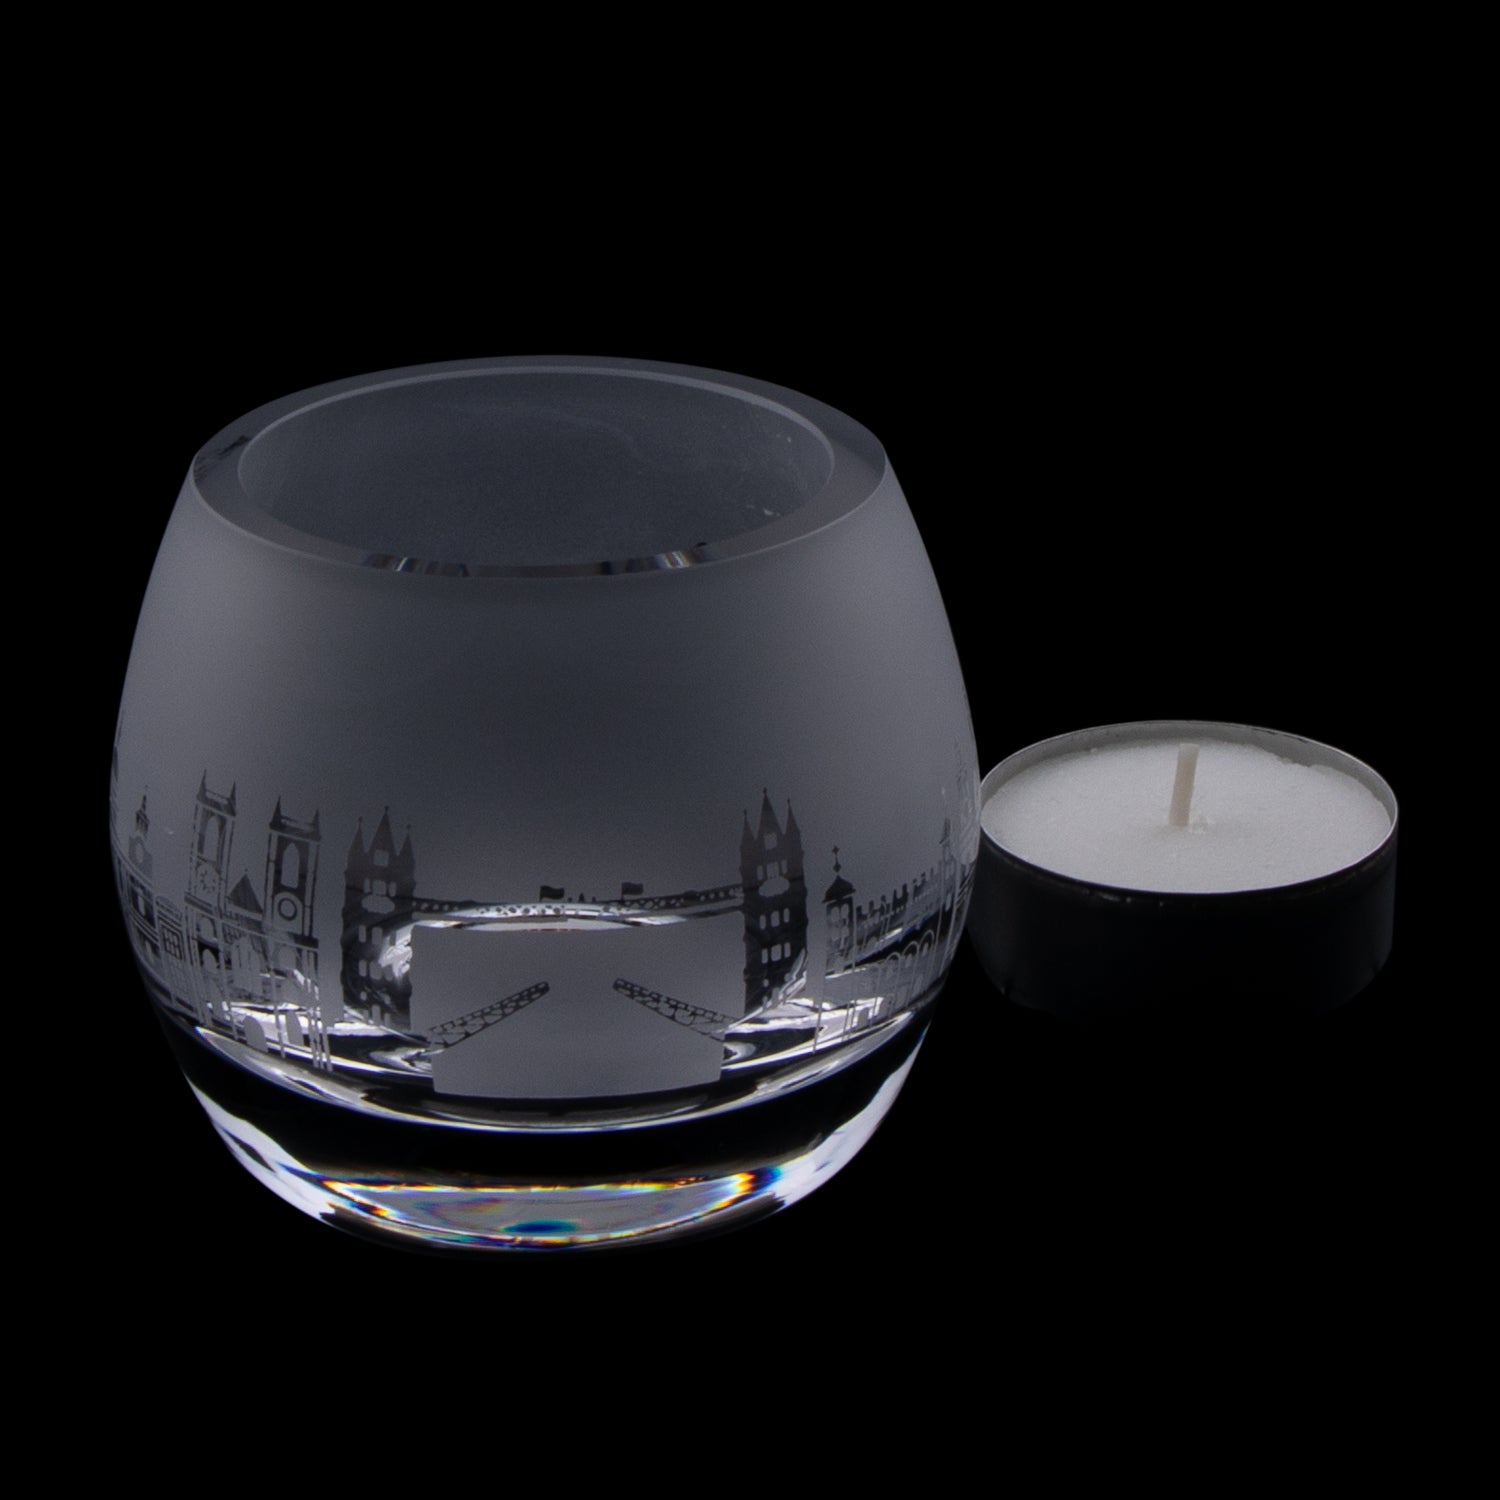 London Tea Light Glass Holder - Black 1